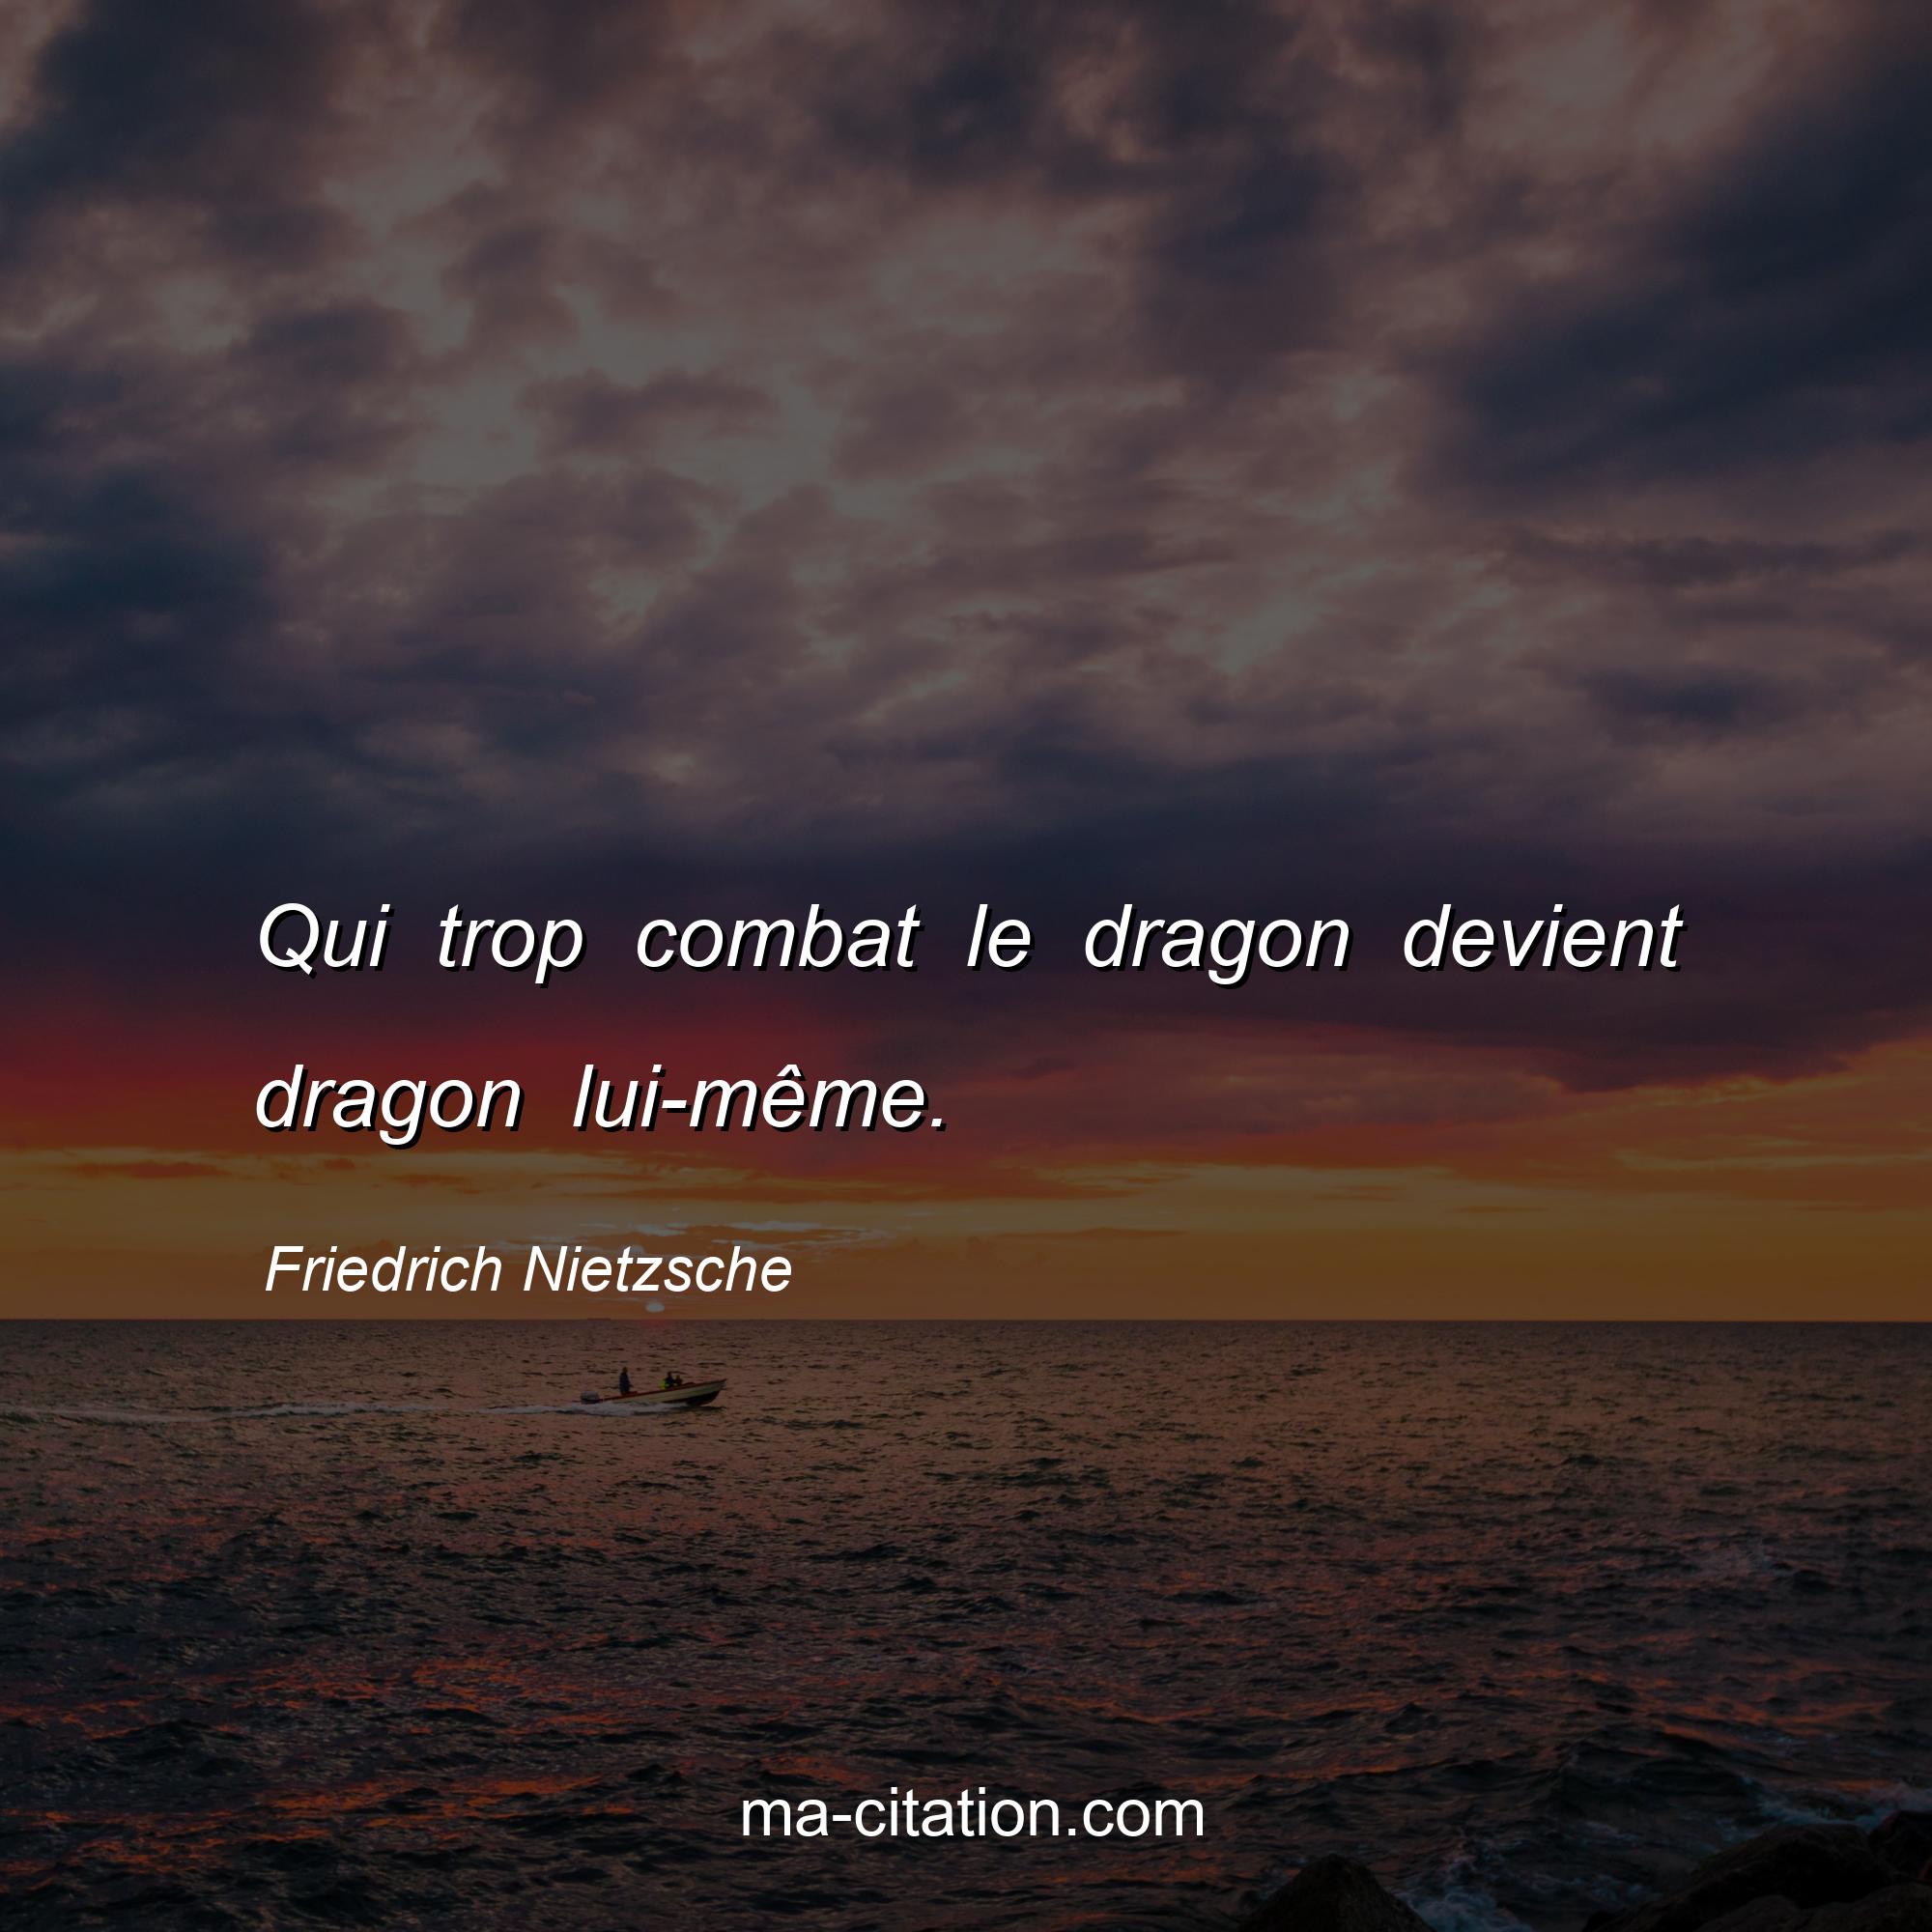 Friedrich Nietzsche : Qui trop combat le dragon devient dragon lui-même.